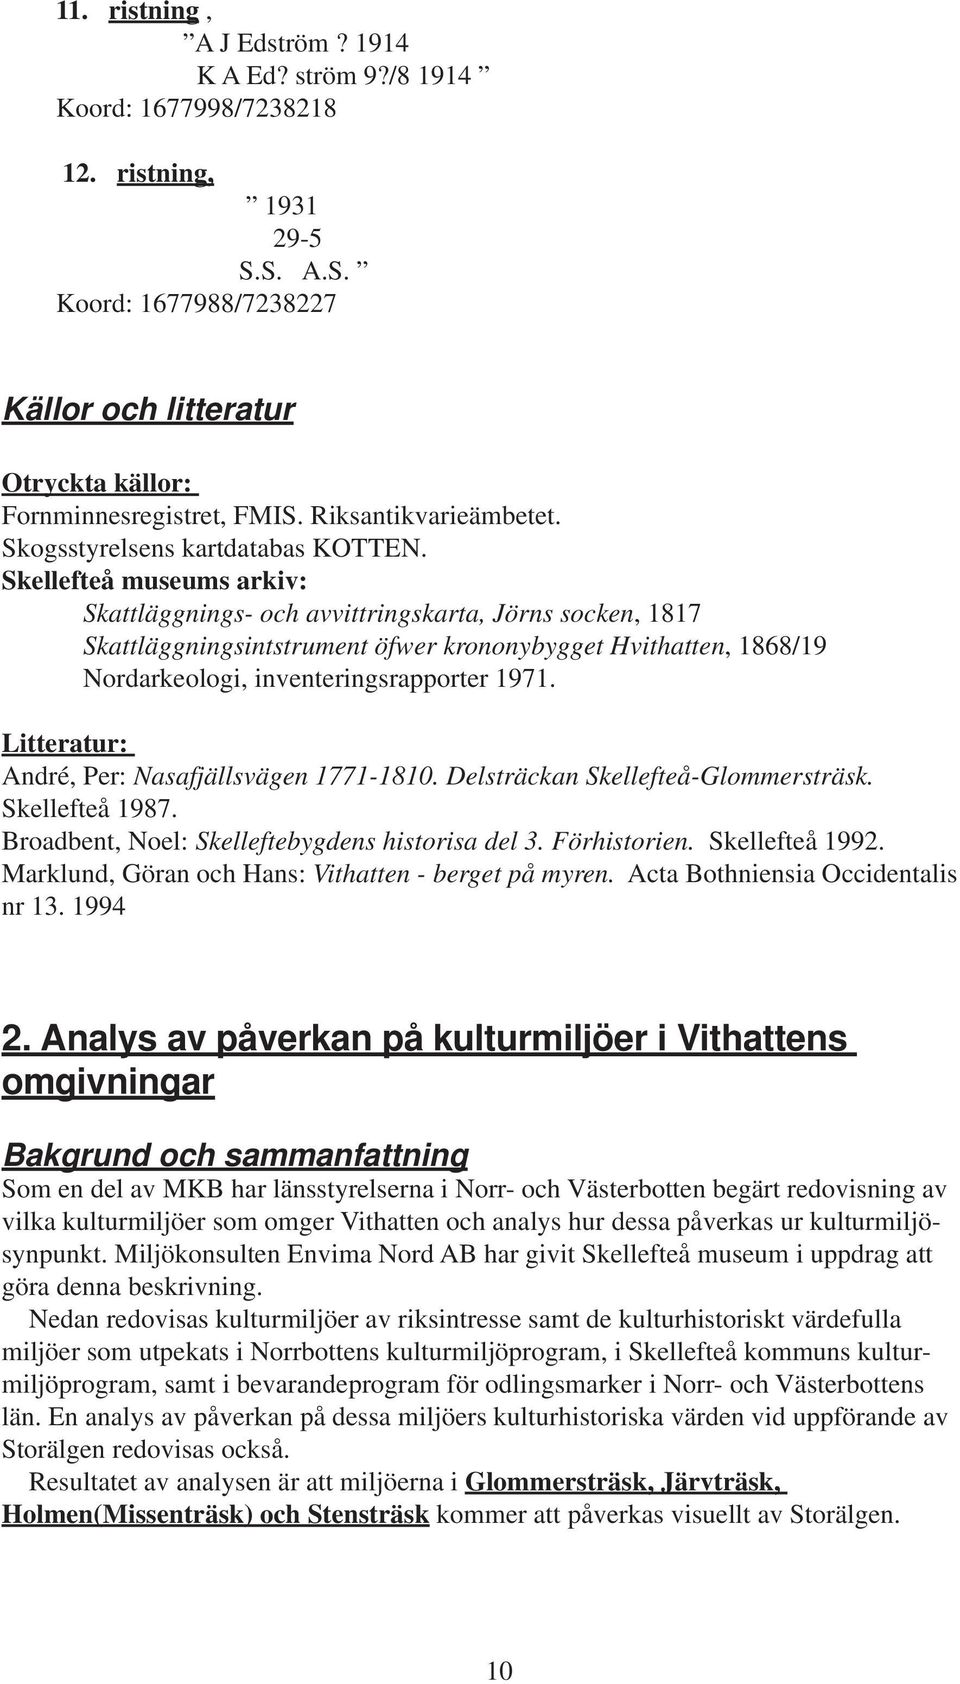 Skellefteå museums arkiv: Skattläggnings- och avvittringskarta, Jörns socken, 1817 Skattläggningsintstrument öfwer krononybygget Hvithatten, 1868/19 Nordarkeologi, inventeringsrapporter 1971.